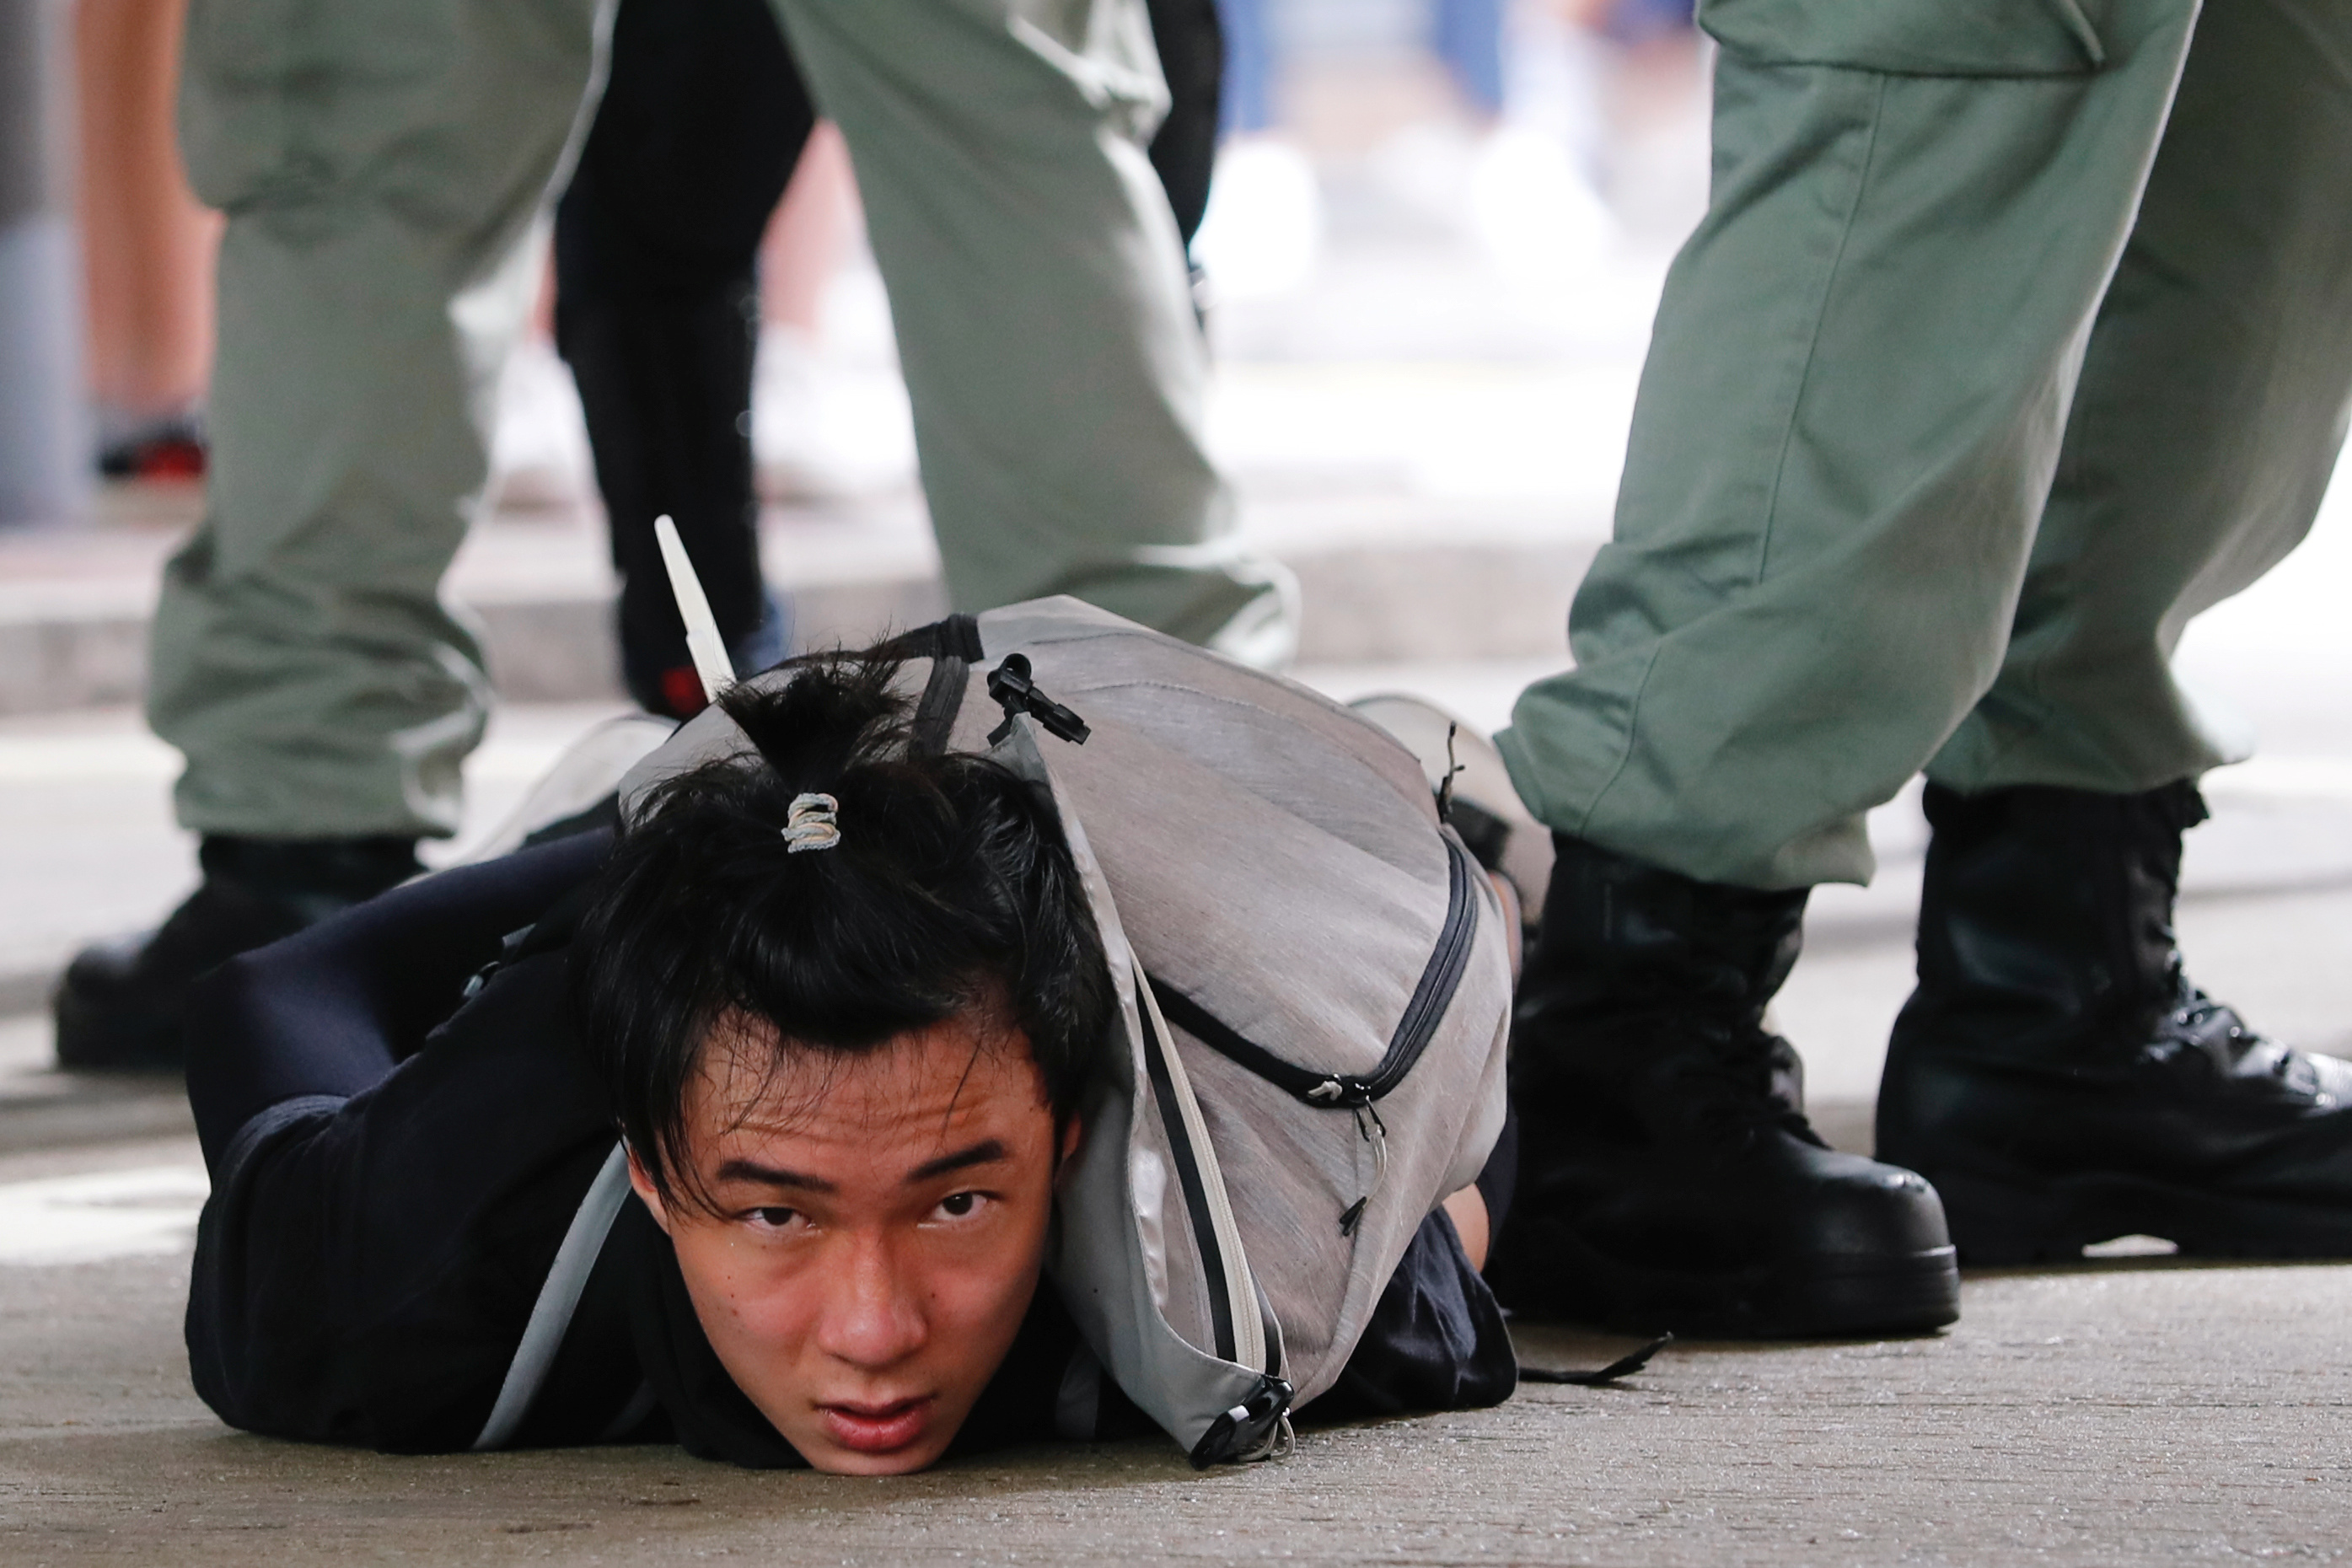 Hongkonés con bandera independentista, primer detenido bajo ley de seguridad